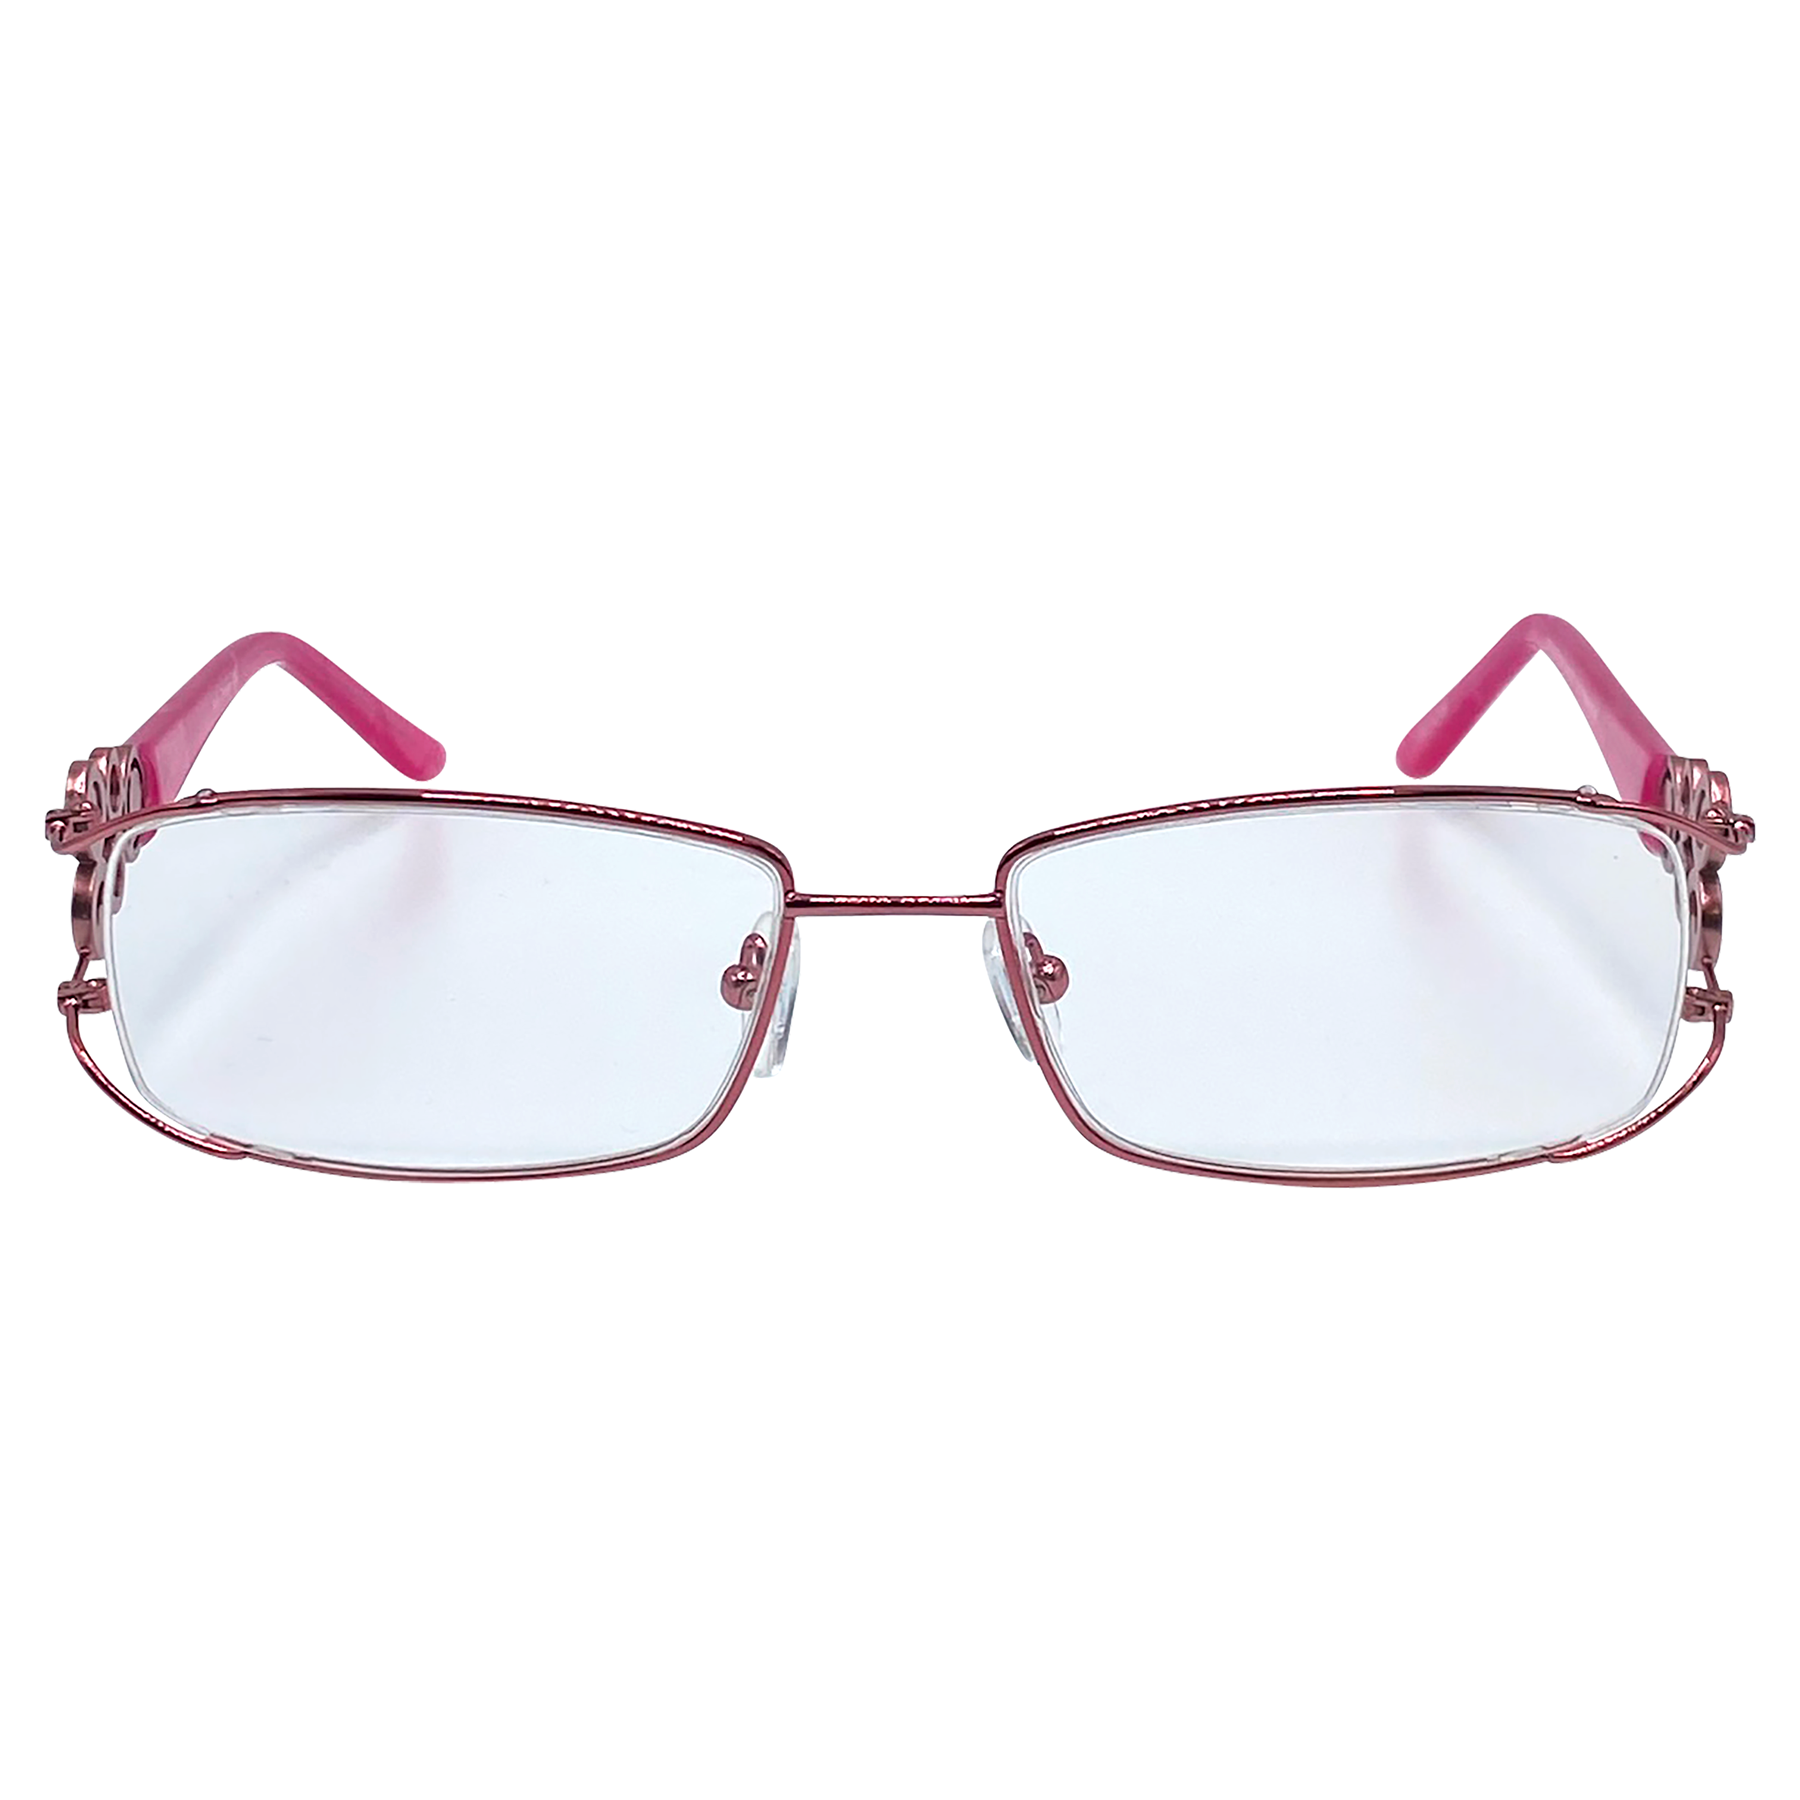 BUBBLES Square 90s Clear Glasses | Premium